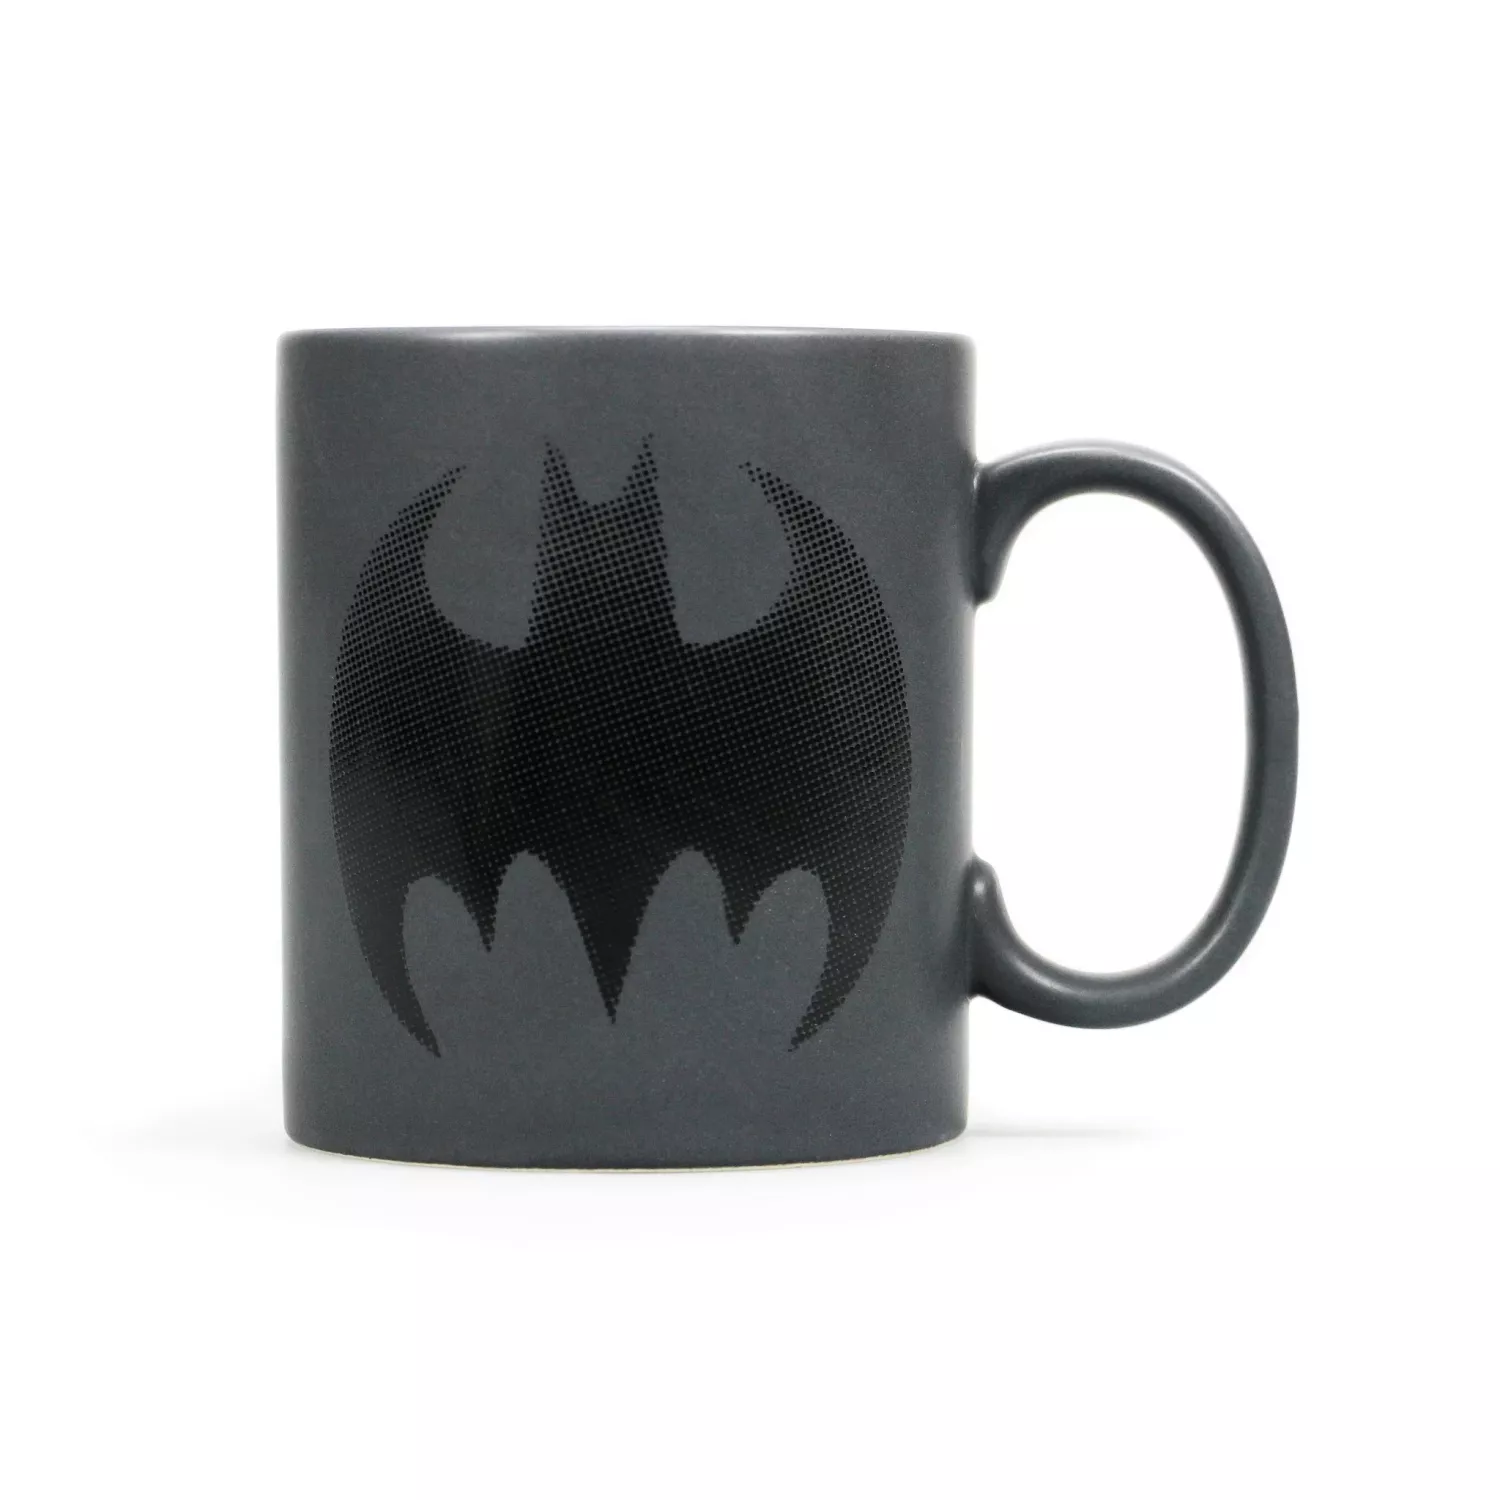 Dc Comics - Batman - Mug - I am batman